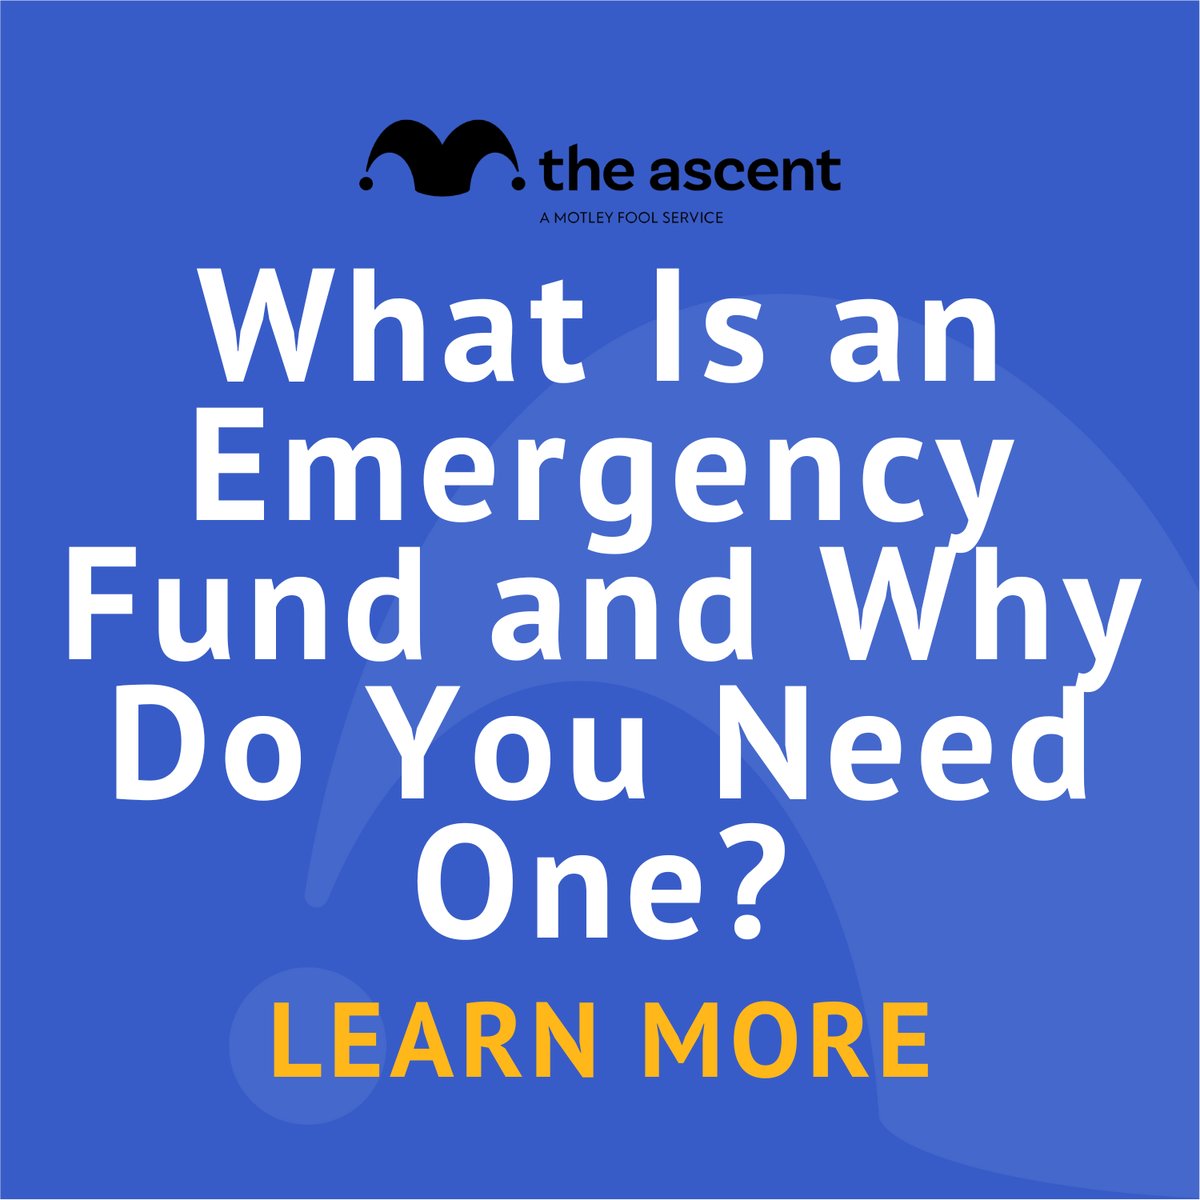 III. Common Scenarios that Require Emergency Ascents